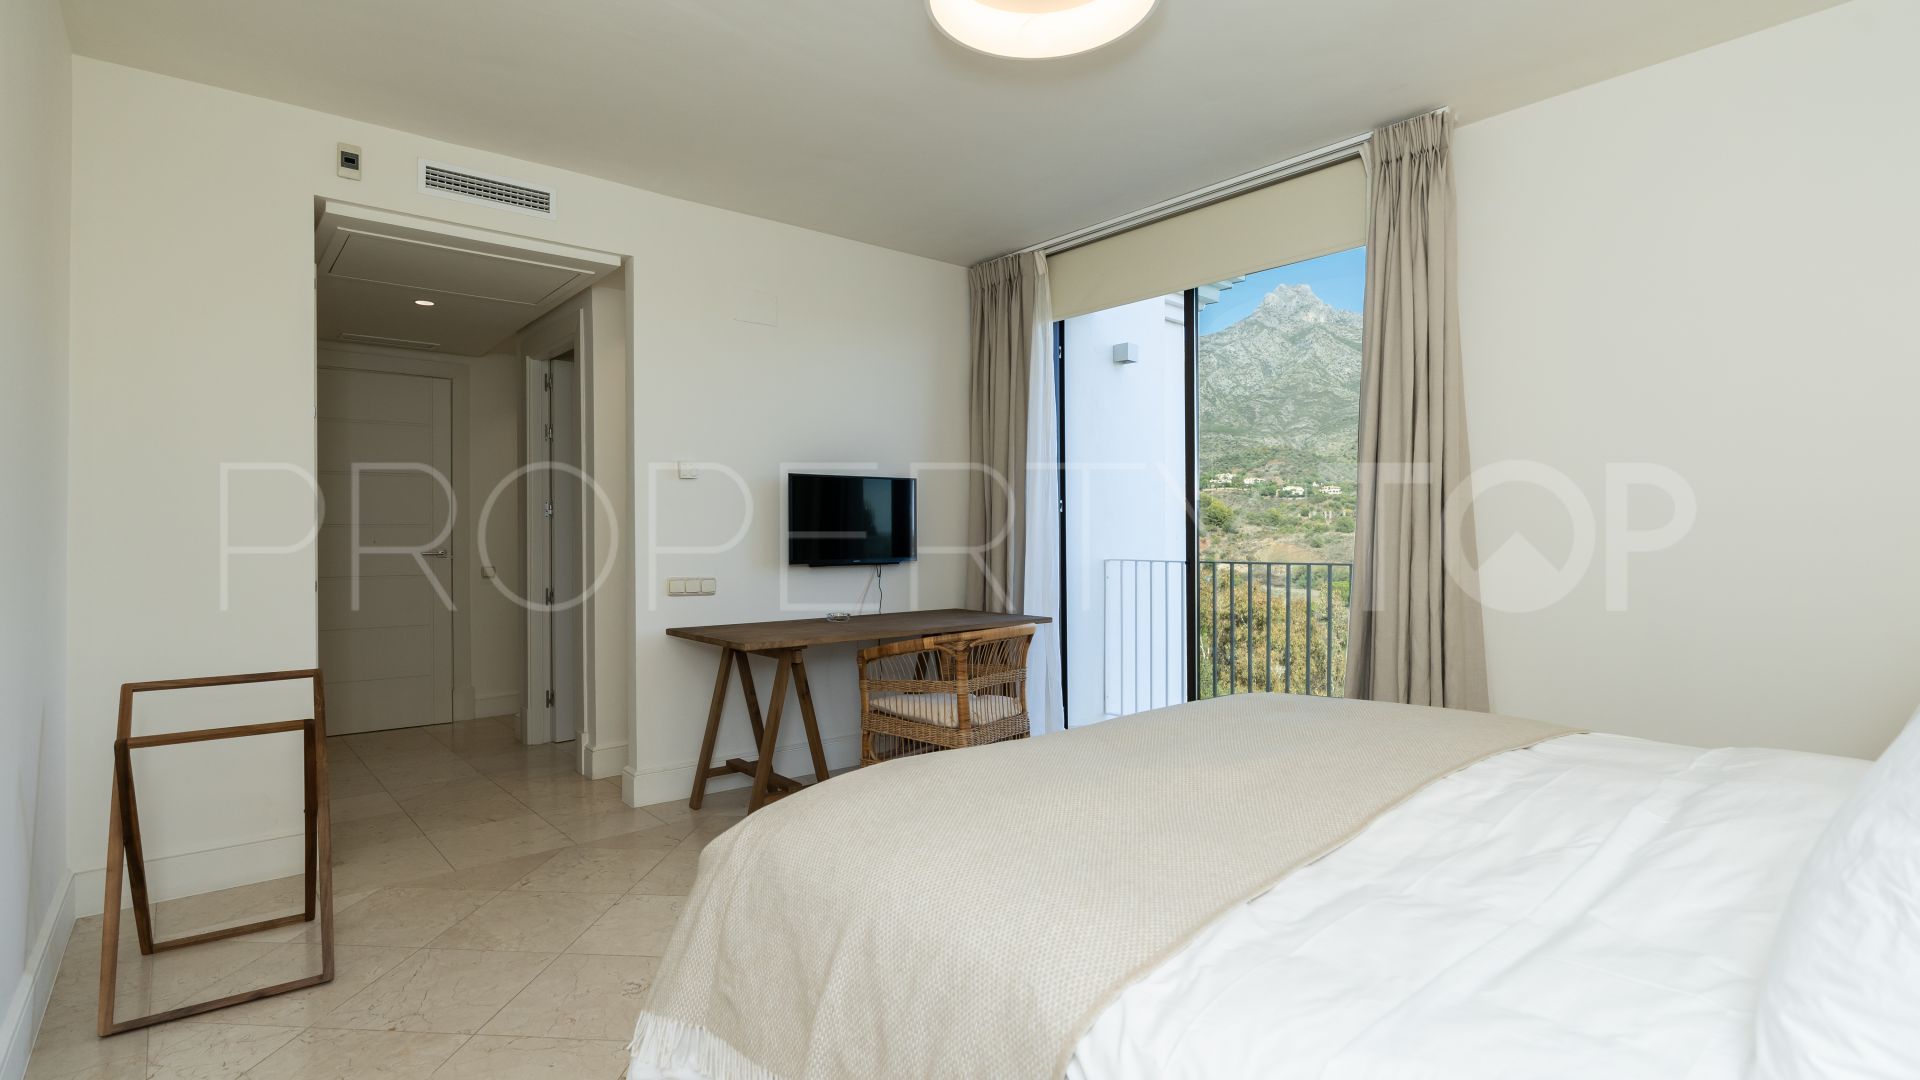 For sale house in Las Lomas del Marbella Club with 5 bedrooms